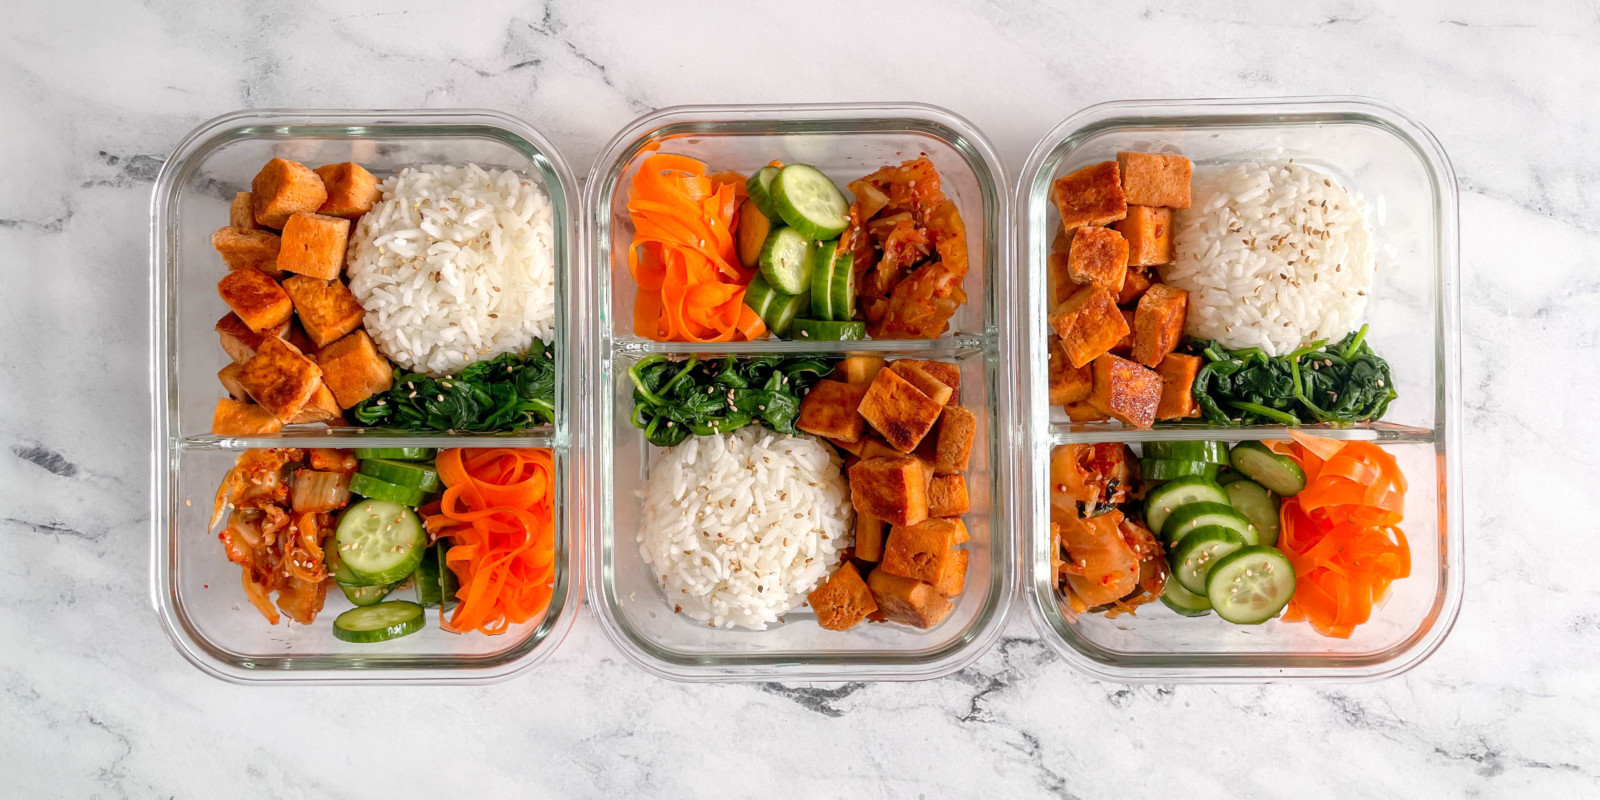 Korean-Inspired Bibimbap Bowls (Vegetarian) - Workweek Lunch